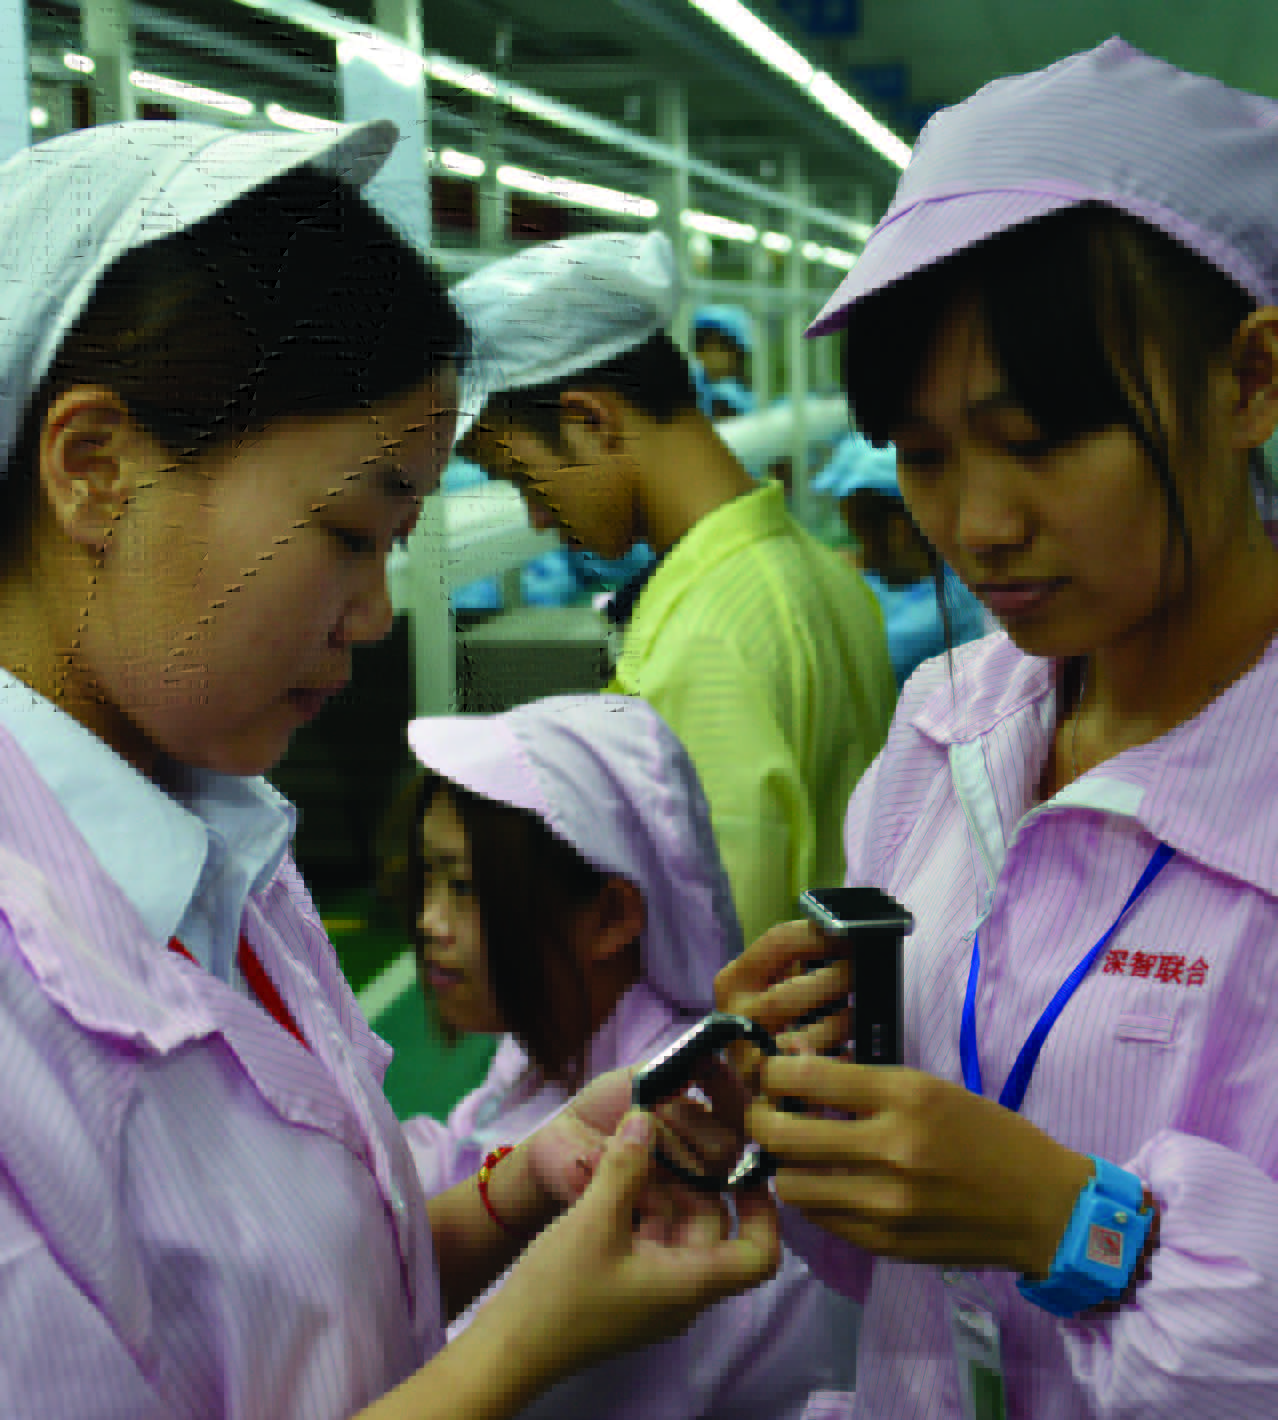 Trabalhadores chineses posam com uma alternativa local mais barata do Relógio Apple em Shenzhen, na província de Guangdong, sul da China, em 22 de abril de 2015 (STR/AFP/Getty Images)